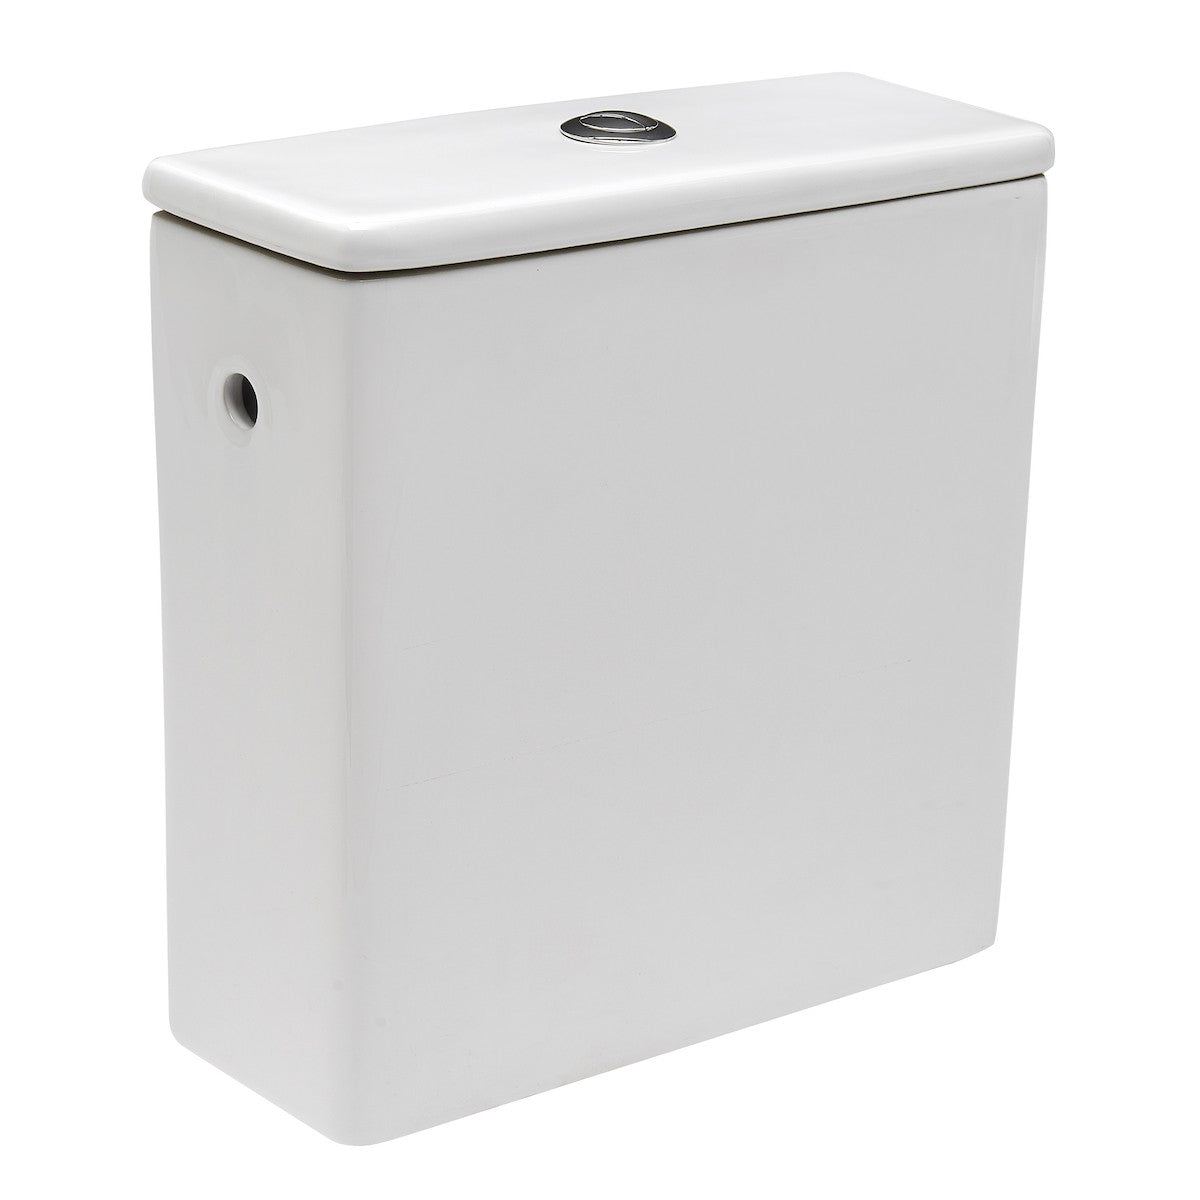 EUR990 Multi Eur talna brezrobna WC školjka monoblok z WC desko s počasnim zapiranjem